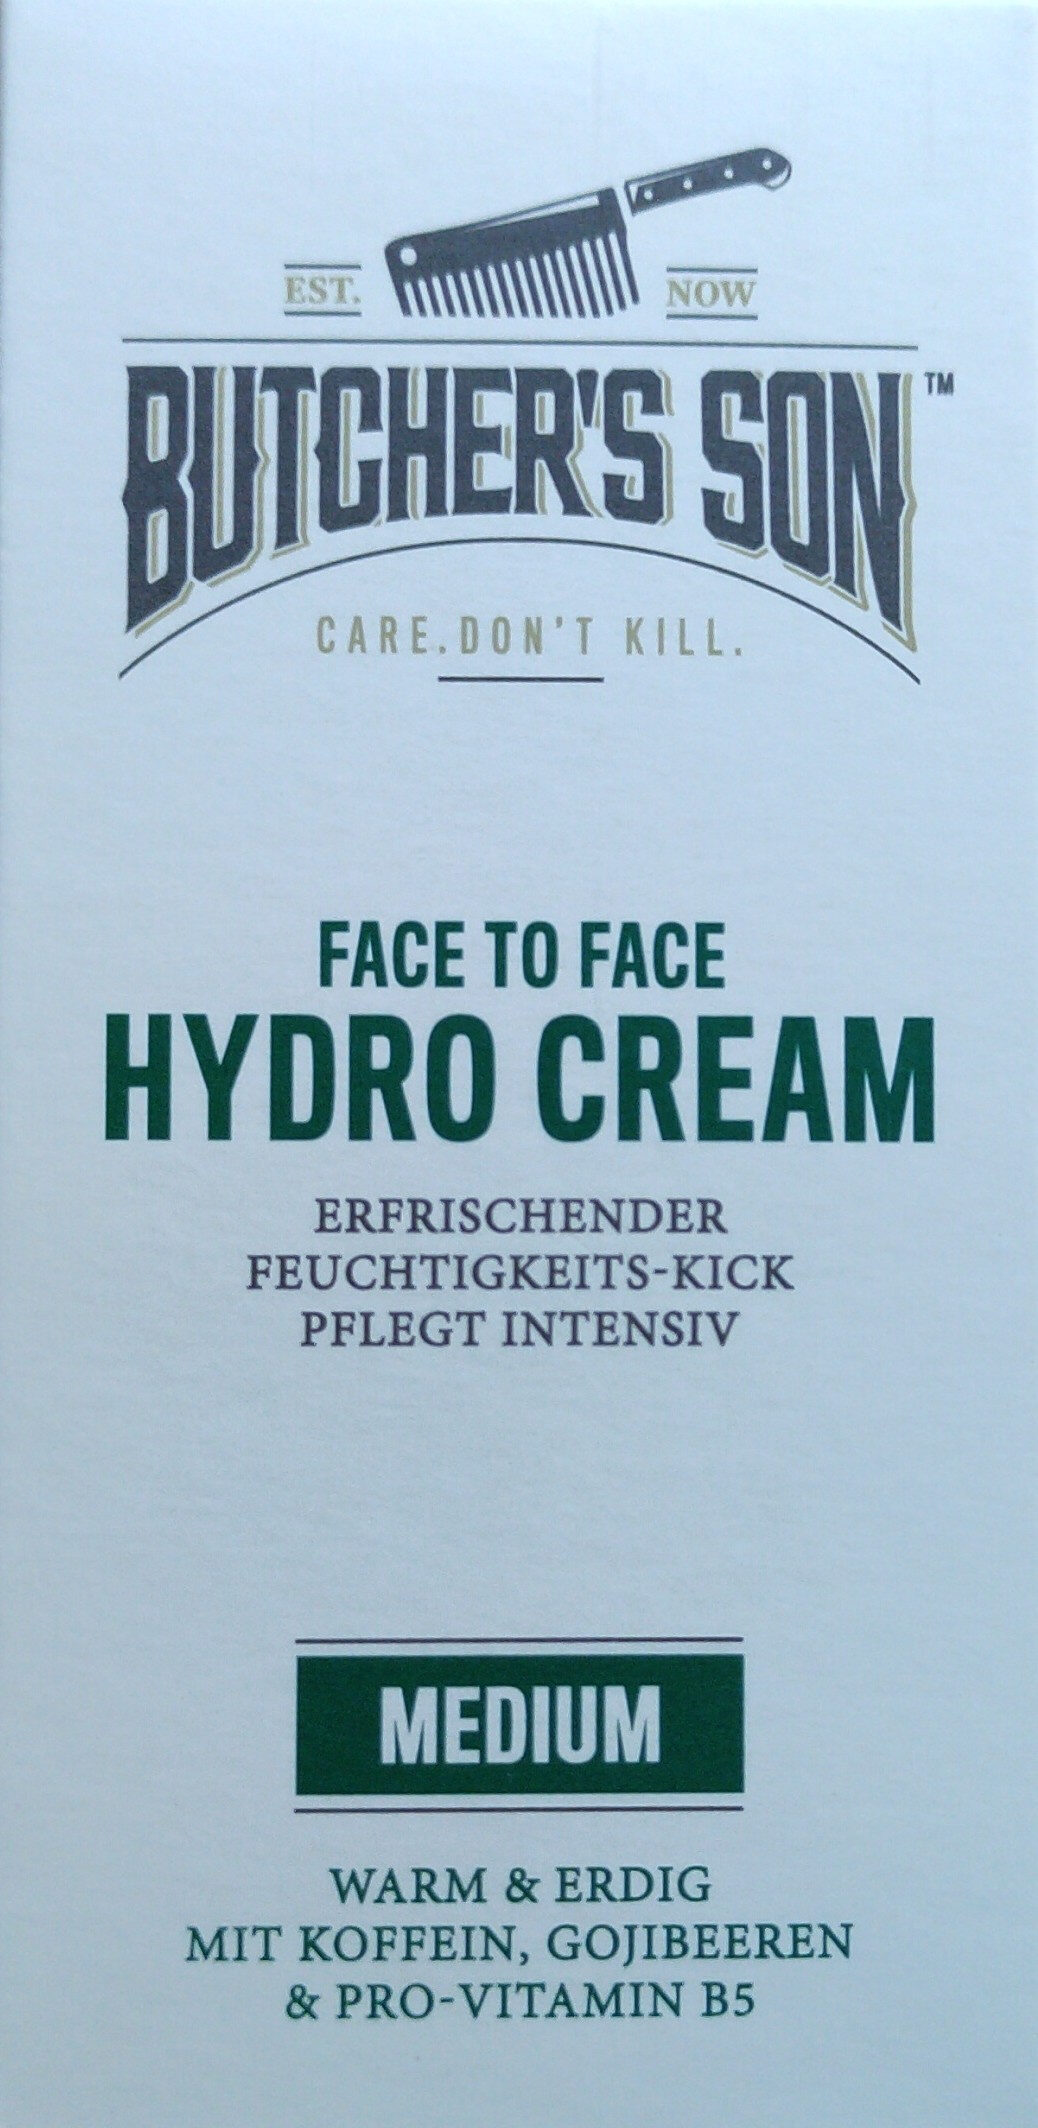 Butcher's Son Hydro Cream - Product - de